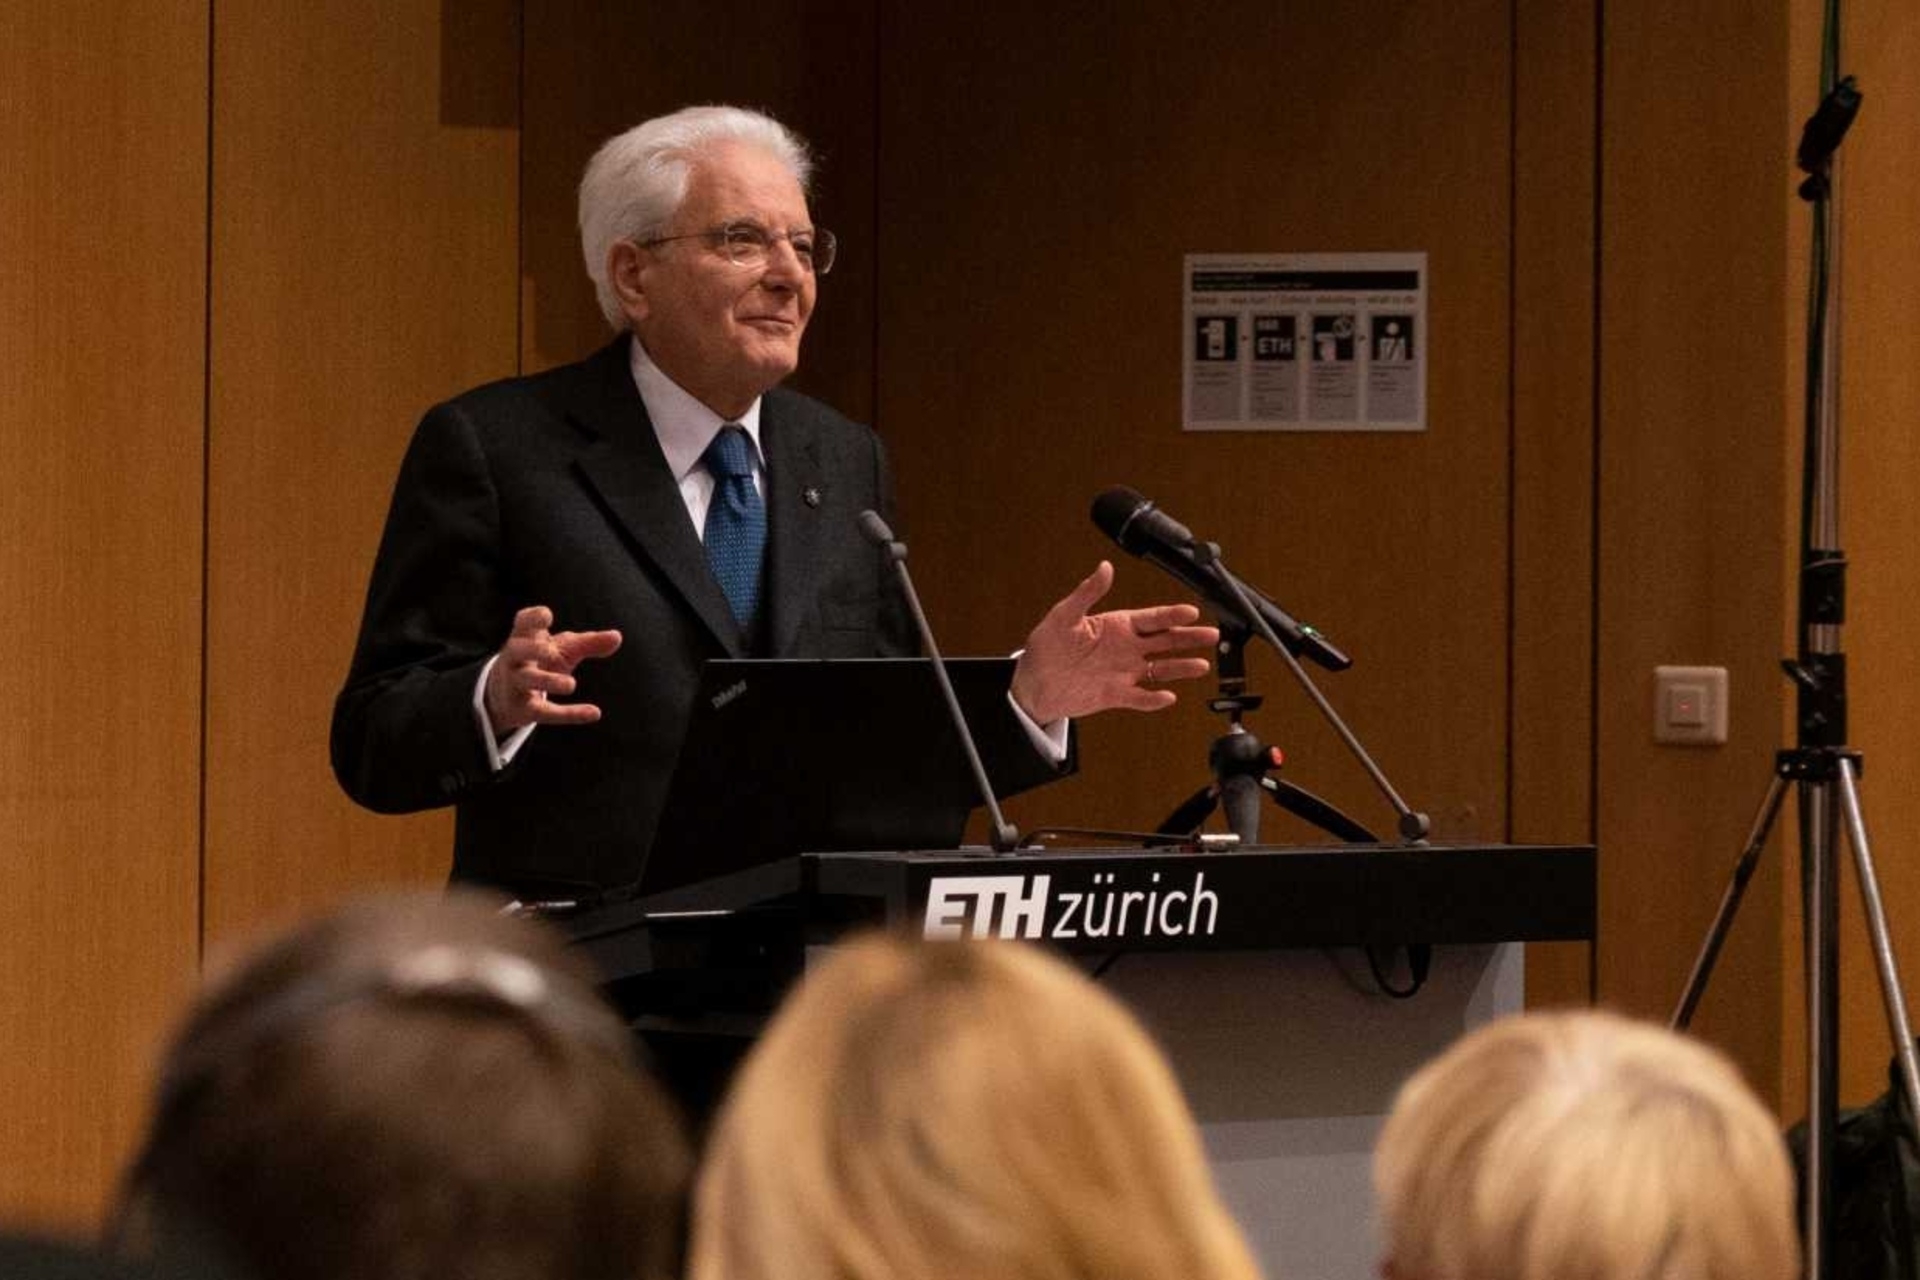 Sergio Mattarella đã có bài phát biểu tại ETH Zurich trong chuyến thăm ba ngày tới Thụy Sĩ vào ngày 28, 29 và 30 tháng 2022 năm XNUMX